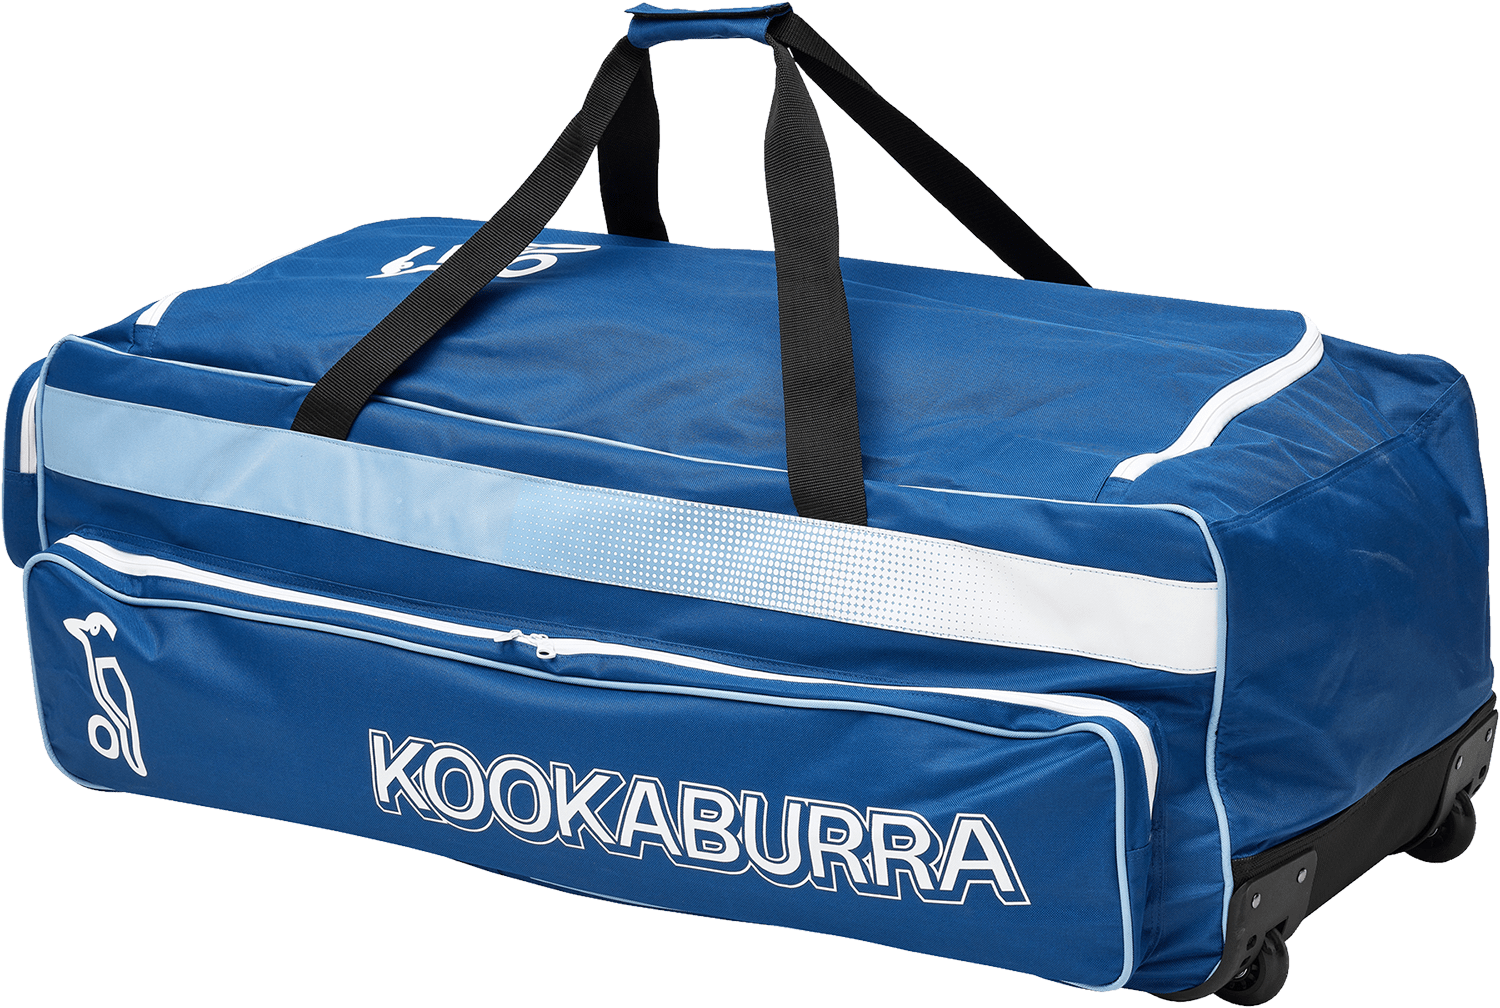 Kookaburra Cricket Bags Kookaburra Pro 1.0 Wheelie Bag